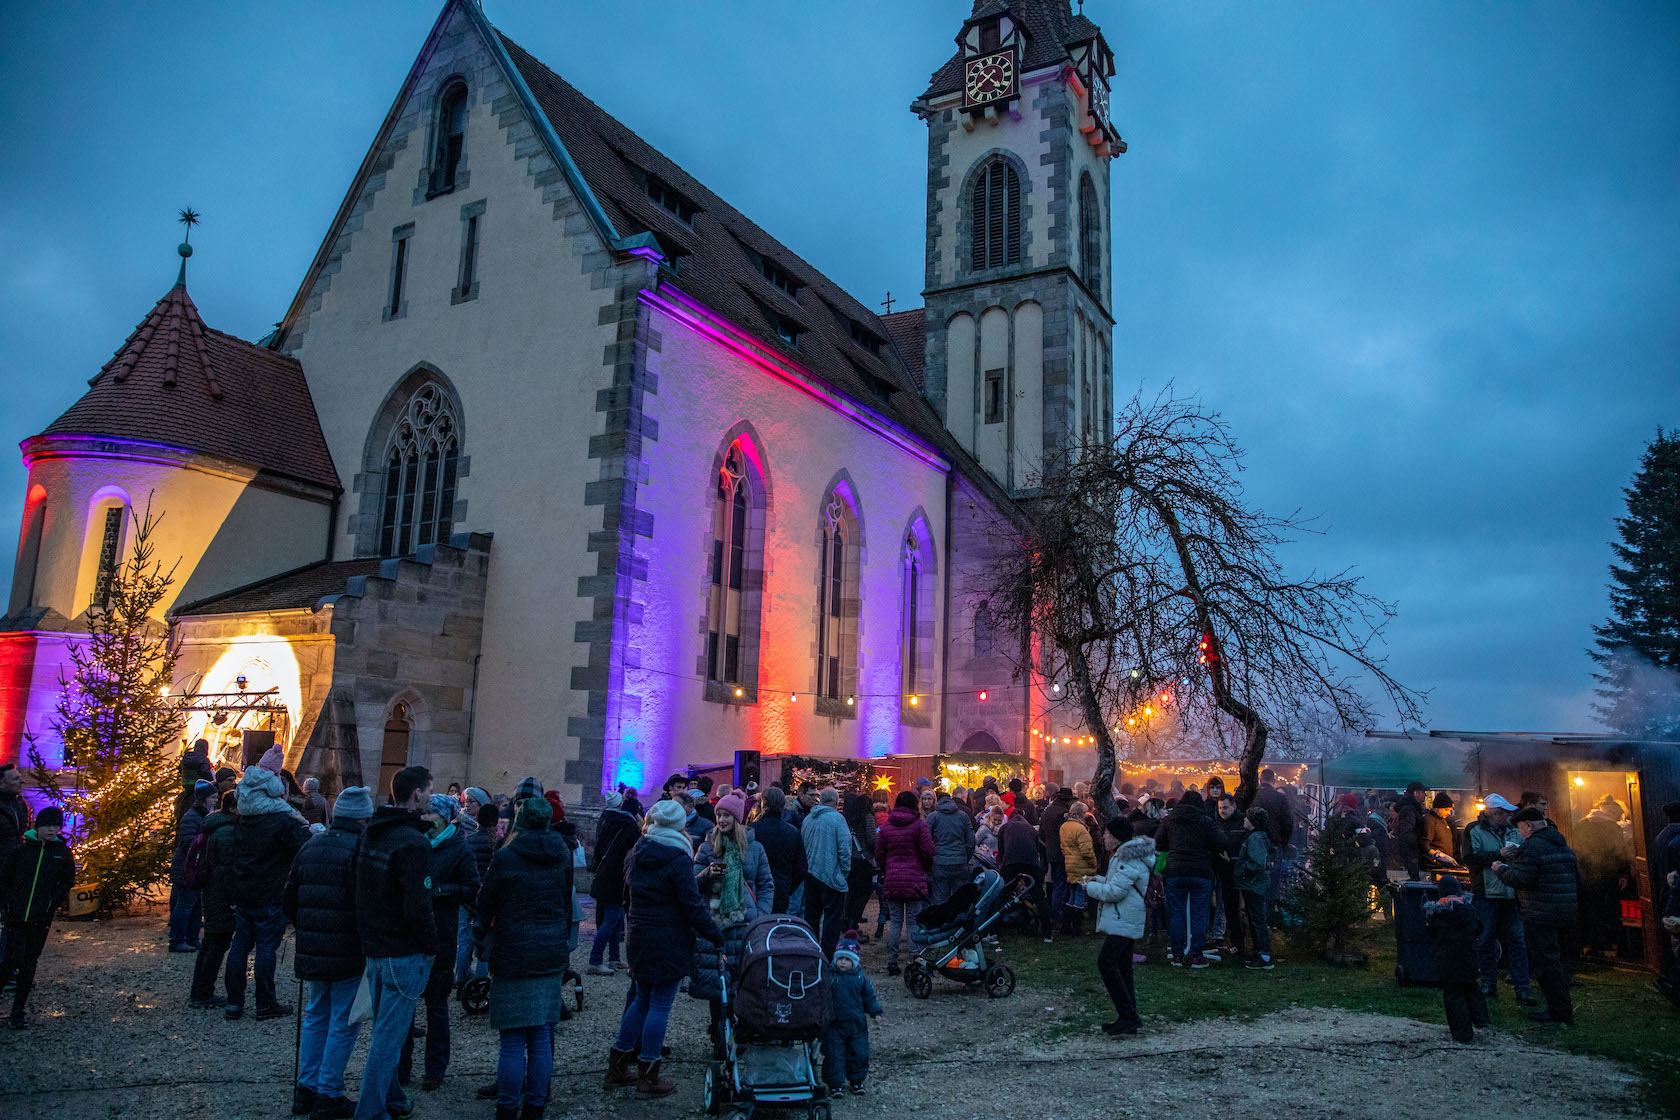 Glockenmarkt am Abend mit Besuchern und Kirche im Hintergrund